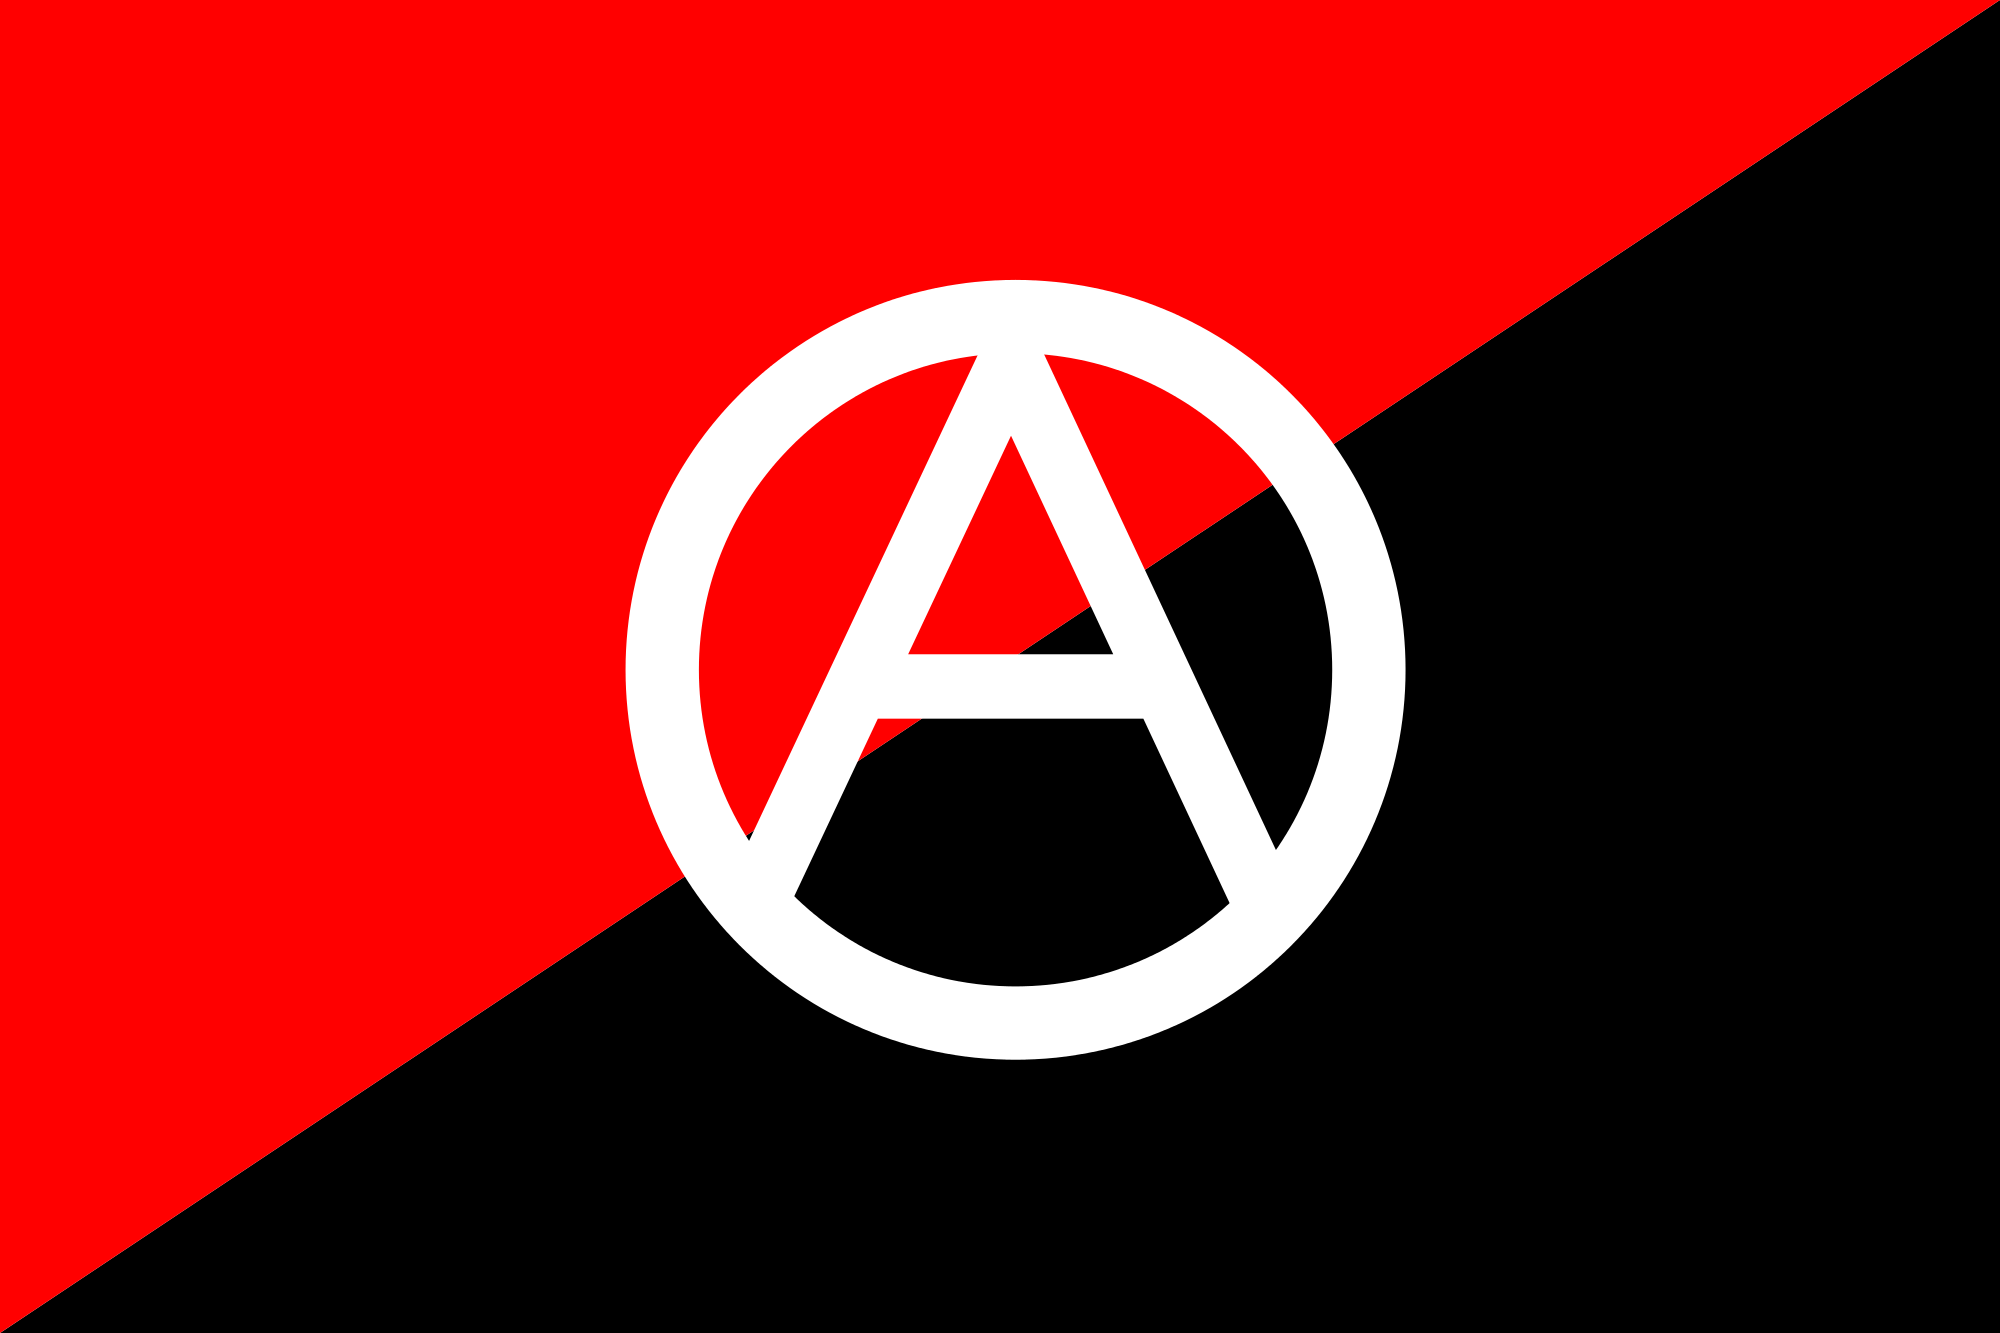 2000px Anarchist flag with A symbol 2.svg  - Han Ryner : l'Homme par Hem Day